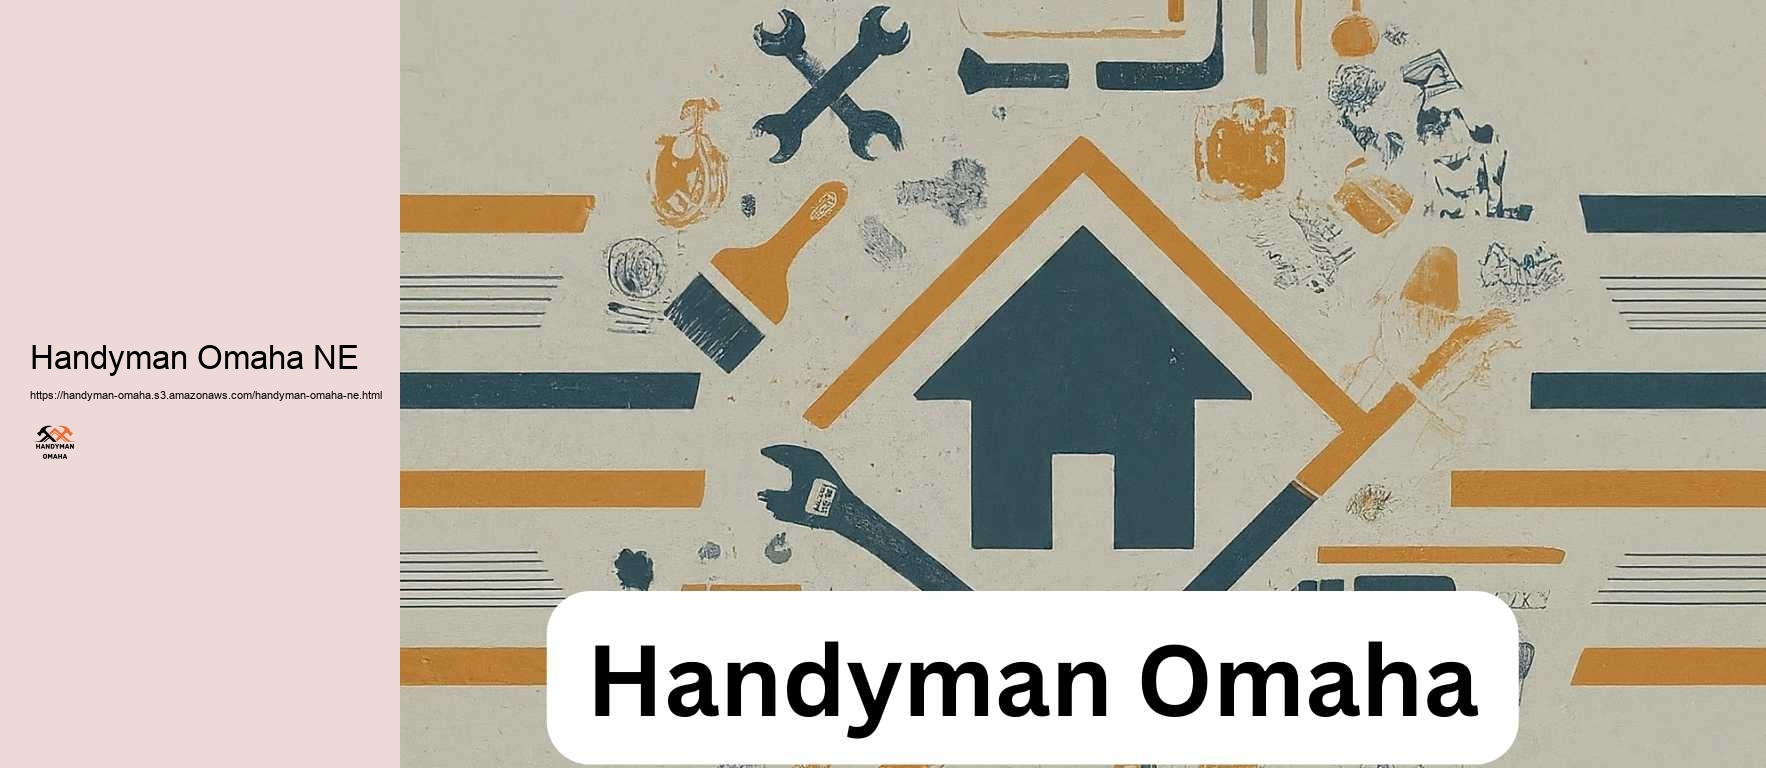 Handyman Omaha NE